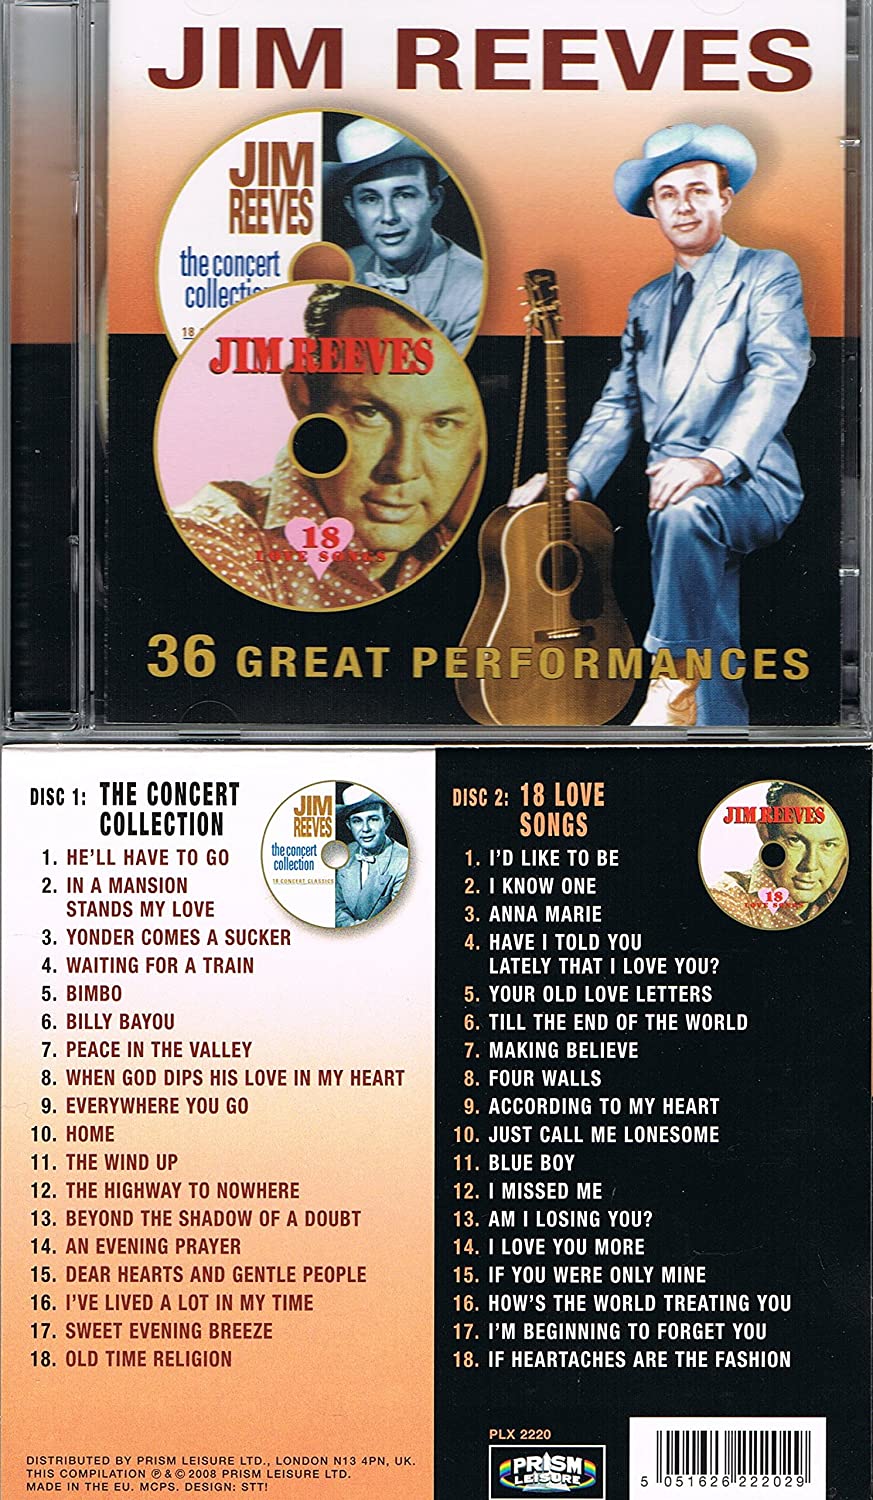 36 Great Performances of Jim Reeves 2CD [Audio CD] Jim Reeves